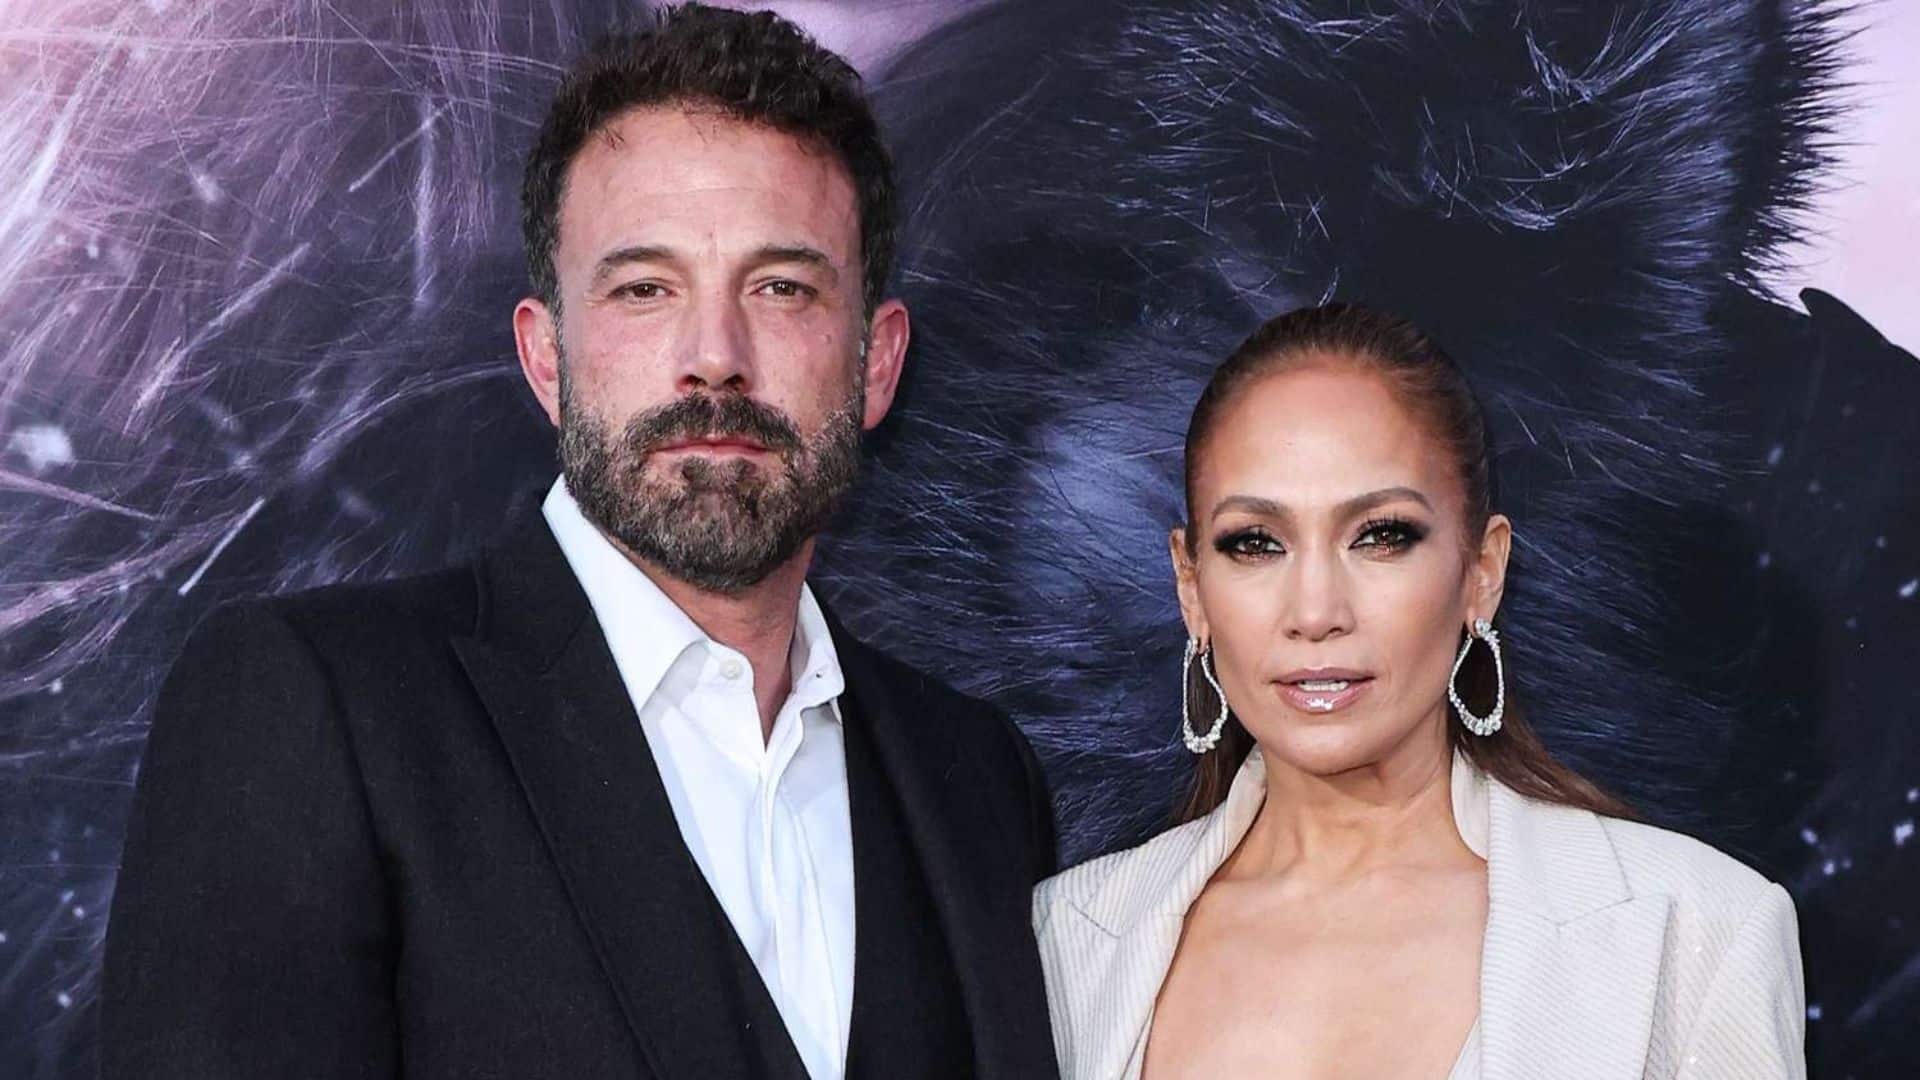 Ben Affleck : définitivement séparé de Jennifer Lopez ? Il aurait quitté le domicile familiale avec ses affaires